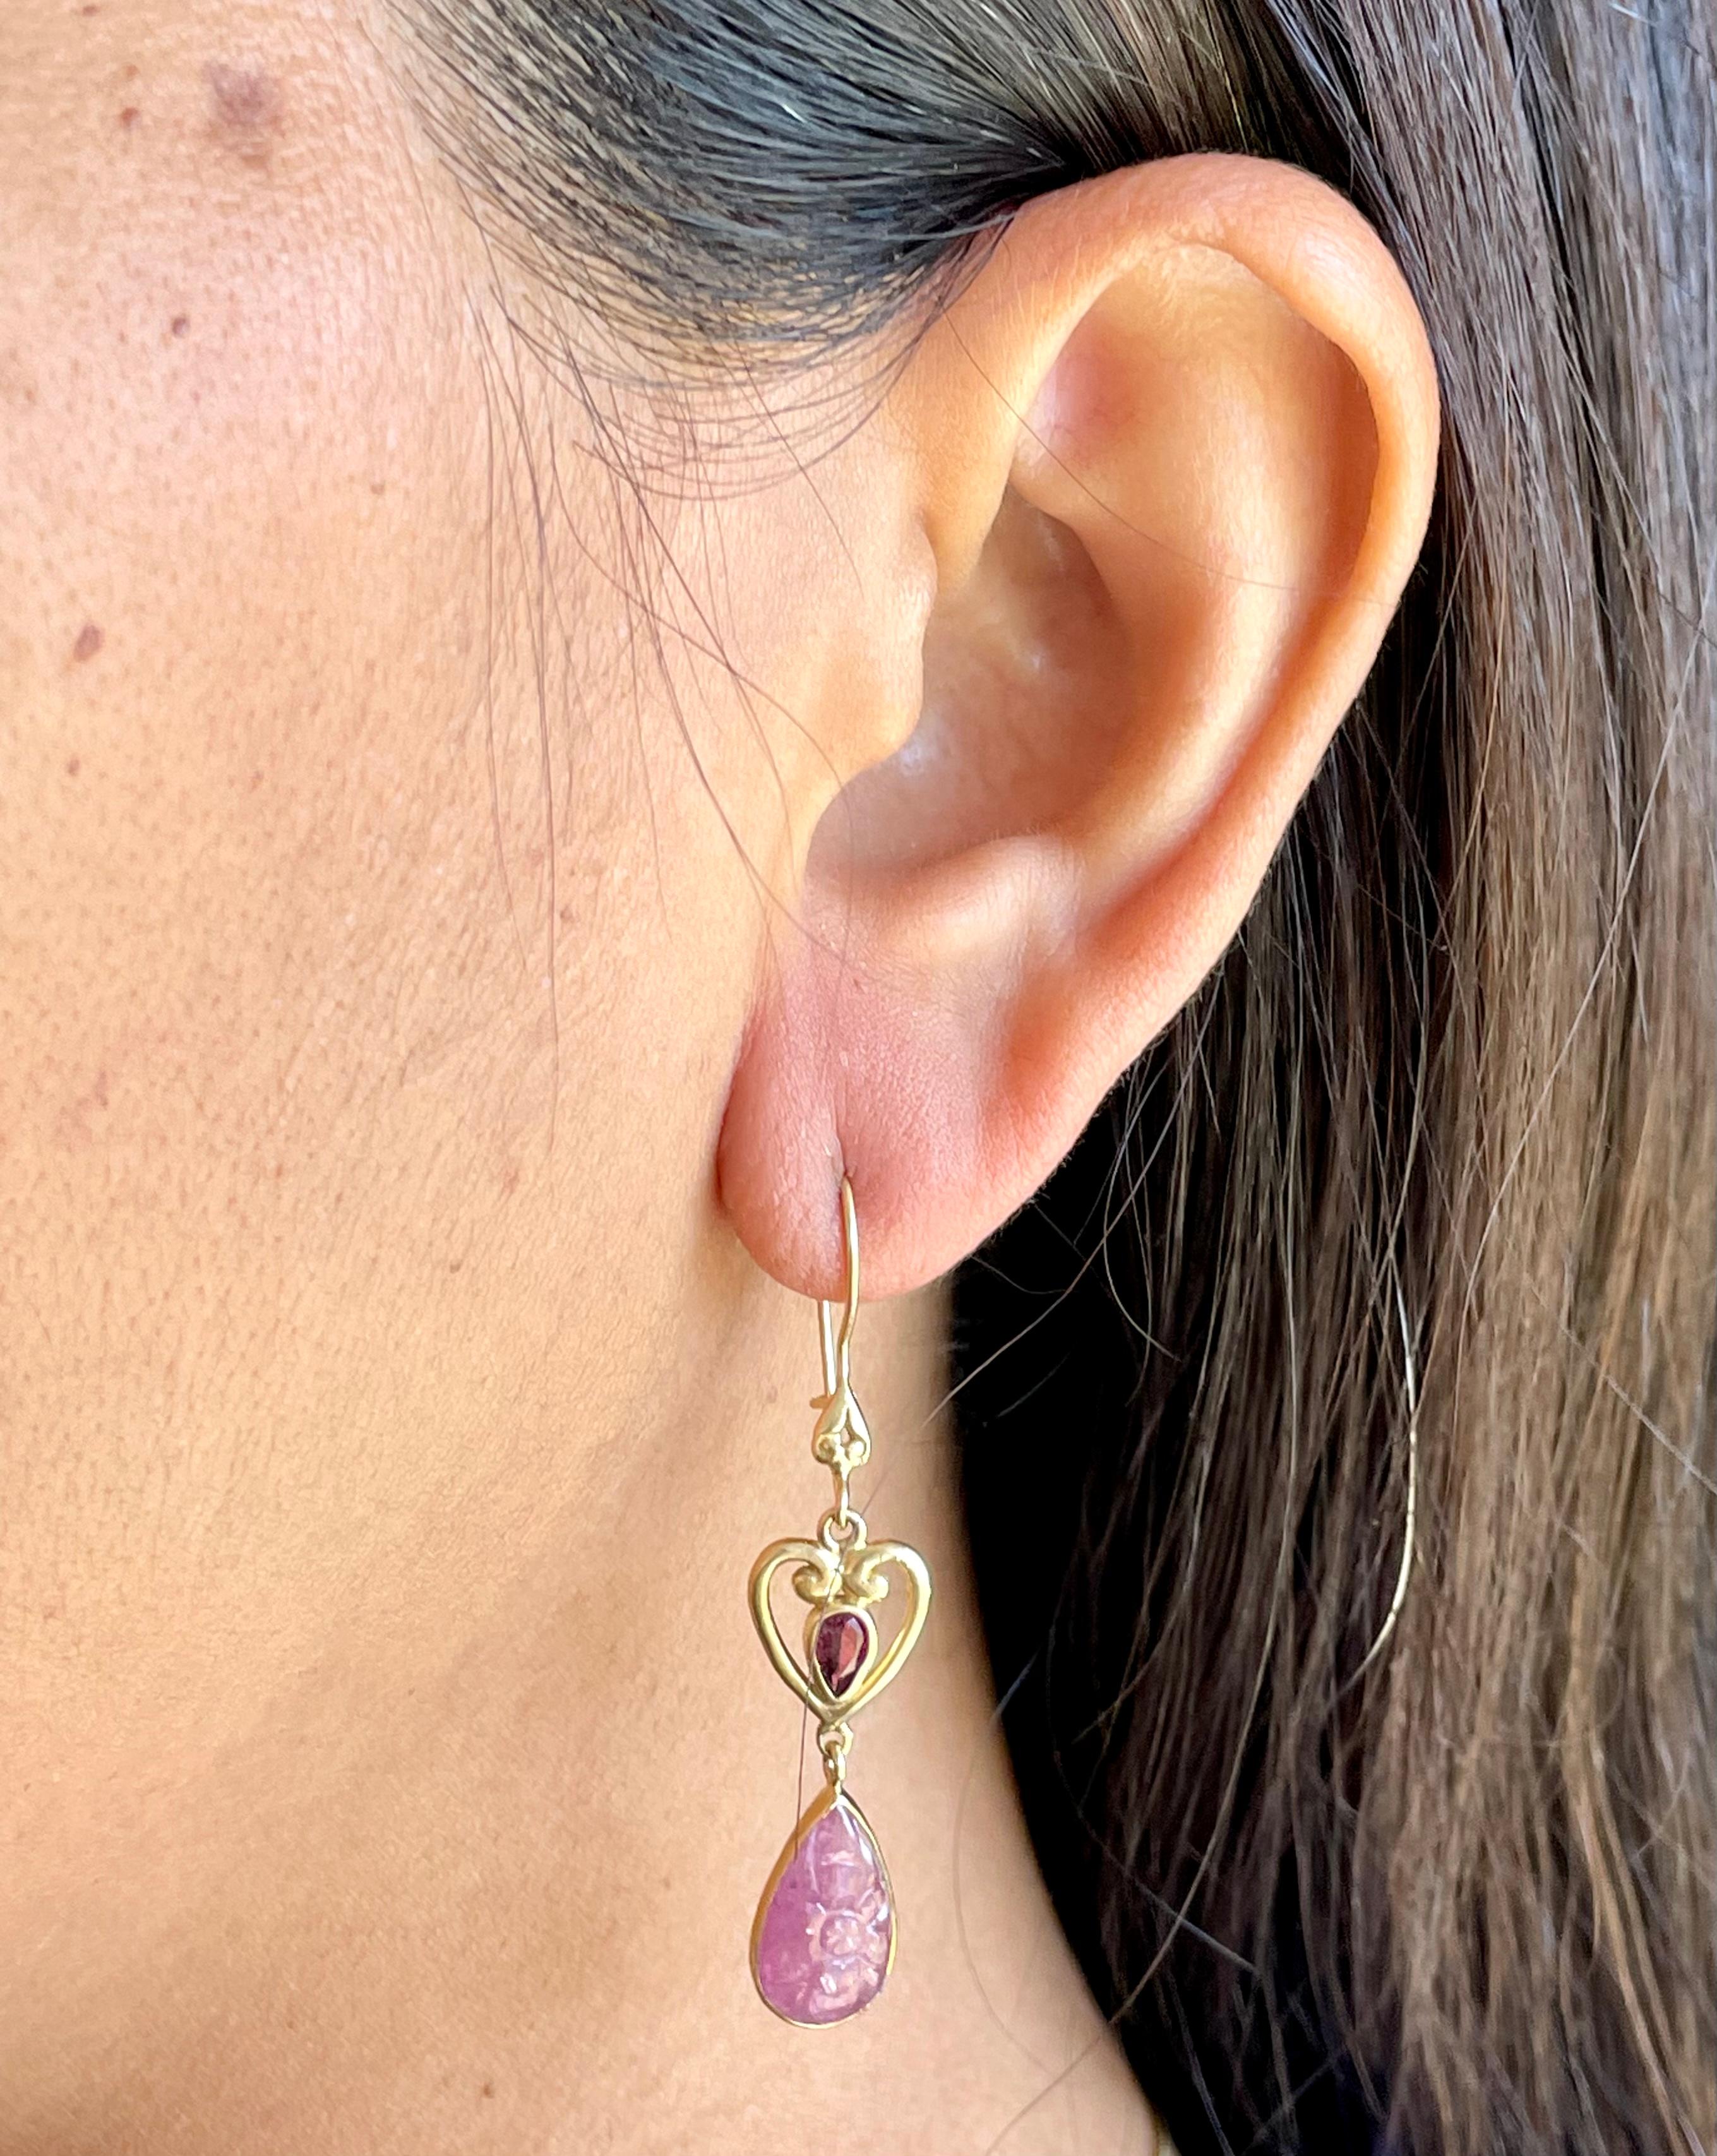 Steven Battelle 7.4 Carats Ruby Pink Tourmaline 18K Gold Wire Earrings For Sale 2